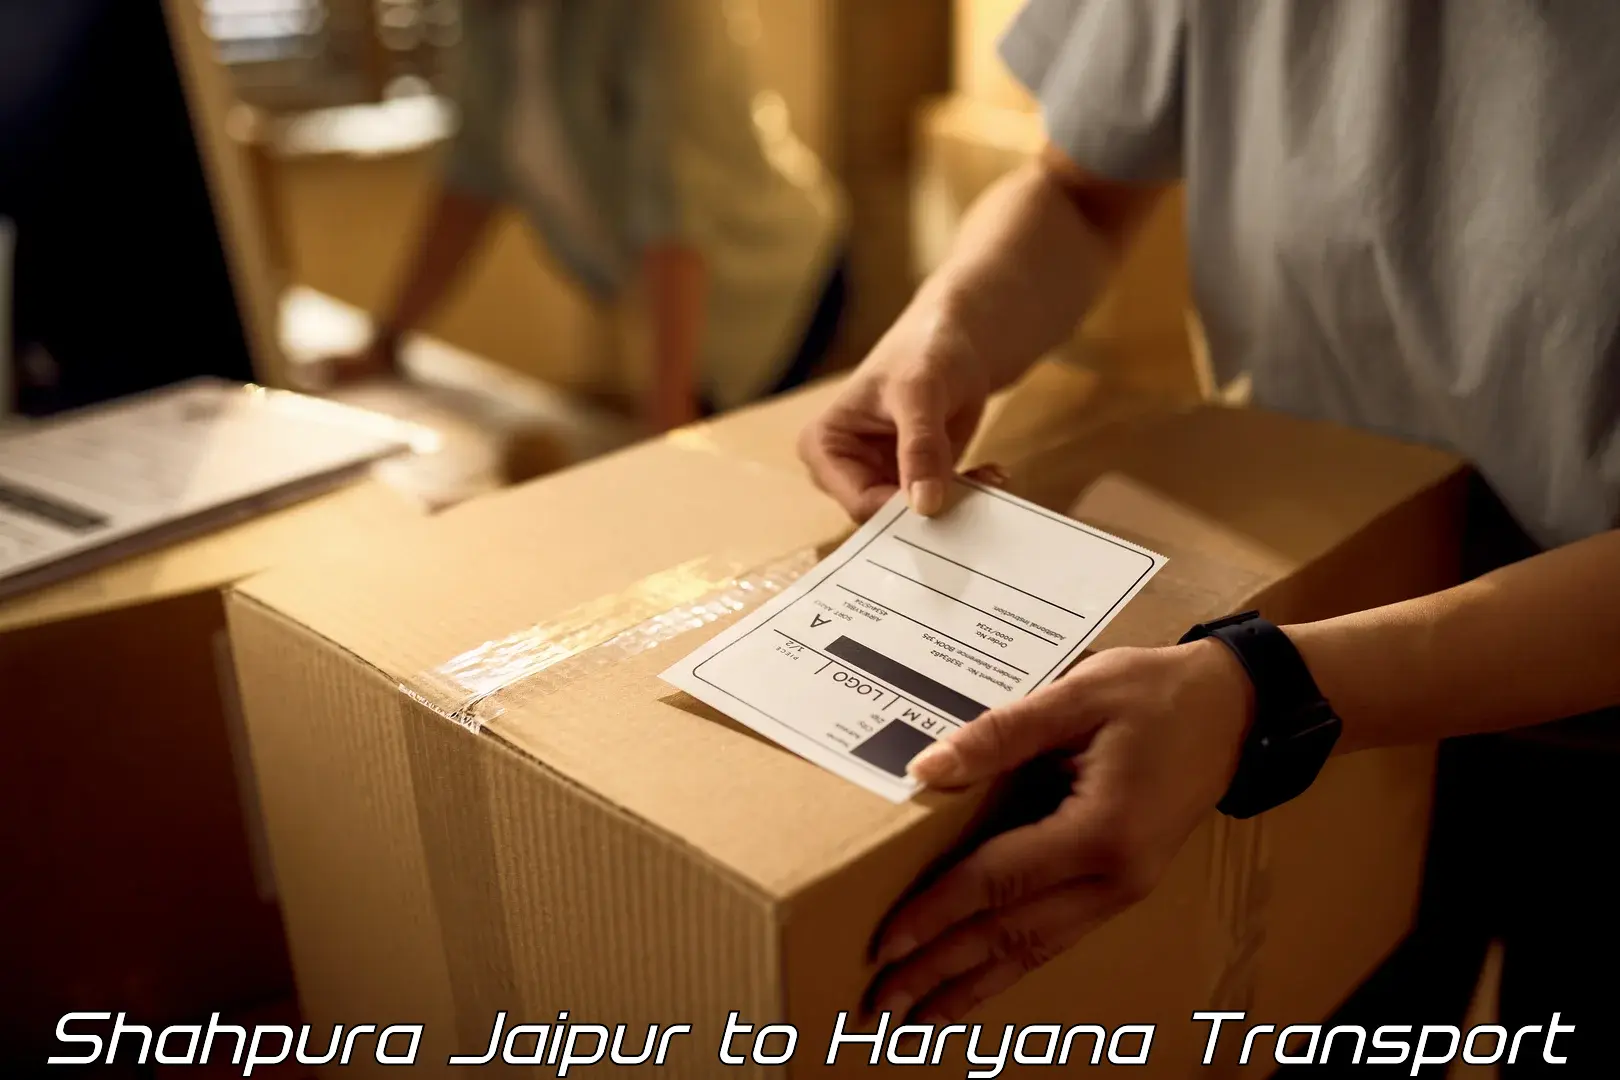 Material transport services Shahpura Jaipur to Bahadurgarh